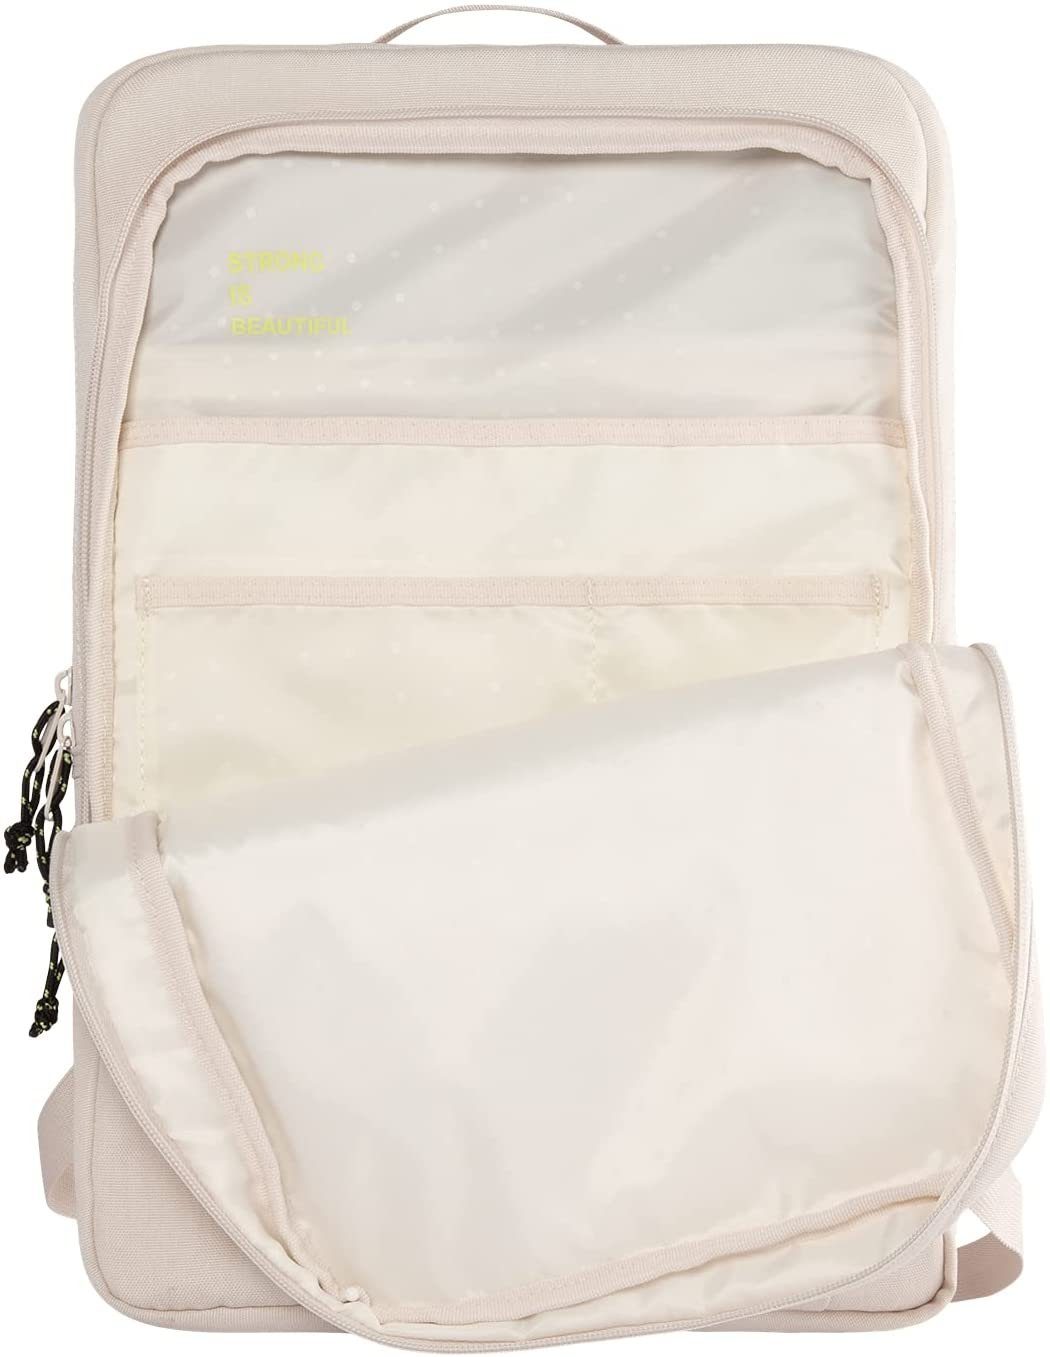 Backpack Tablets bis Laptops Rucksack ergonomisches Urban Mouve, [U] by und Armor UAG für Brustgurt, Laptop-Fach] Design, 16" Flaschenhalter, extra Beige Laptoprucksack Gear - Zoll 16" [Maximaler